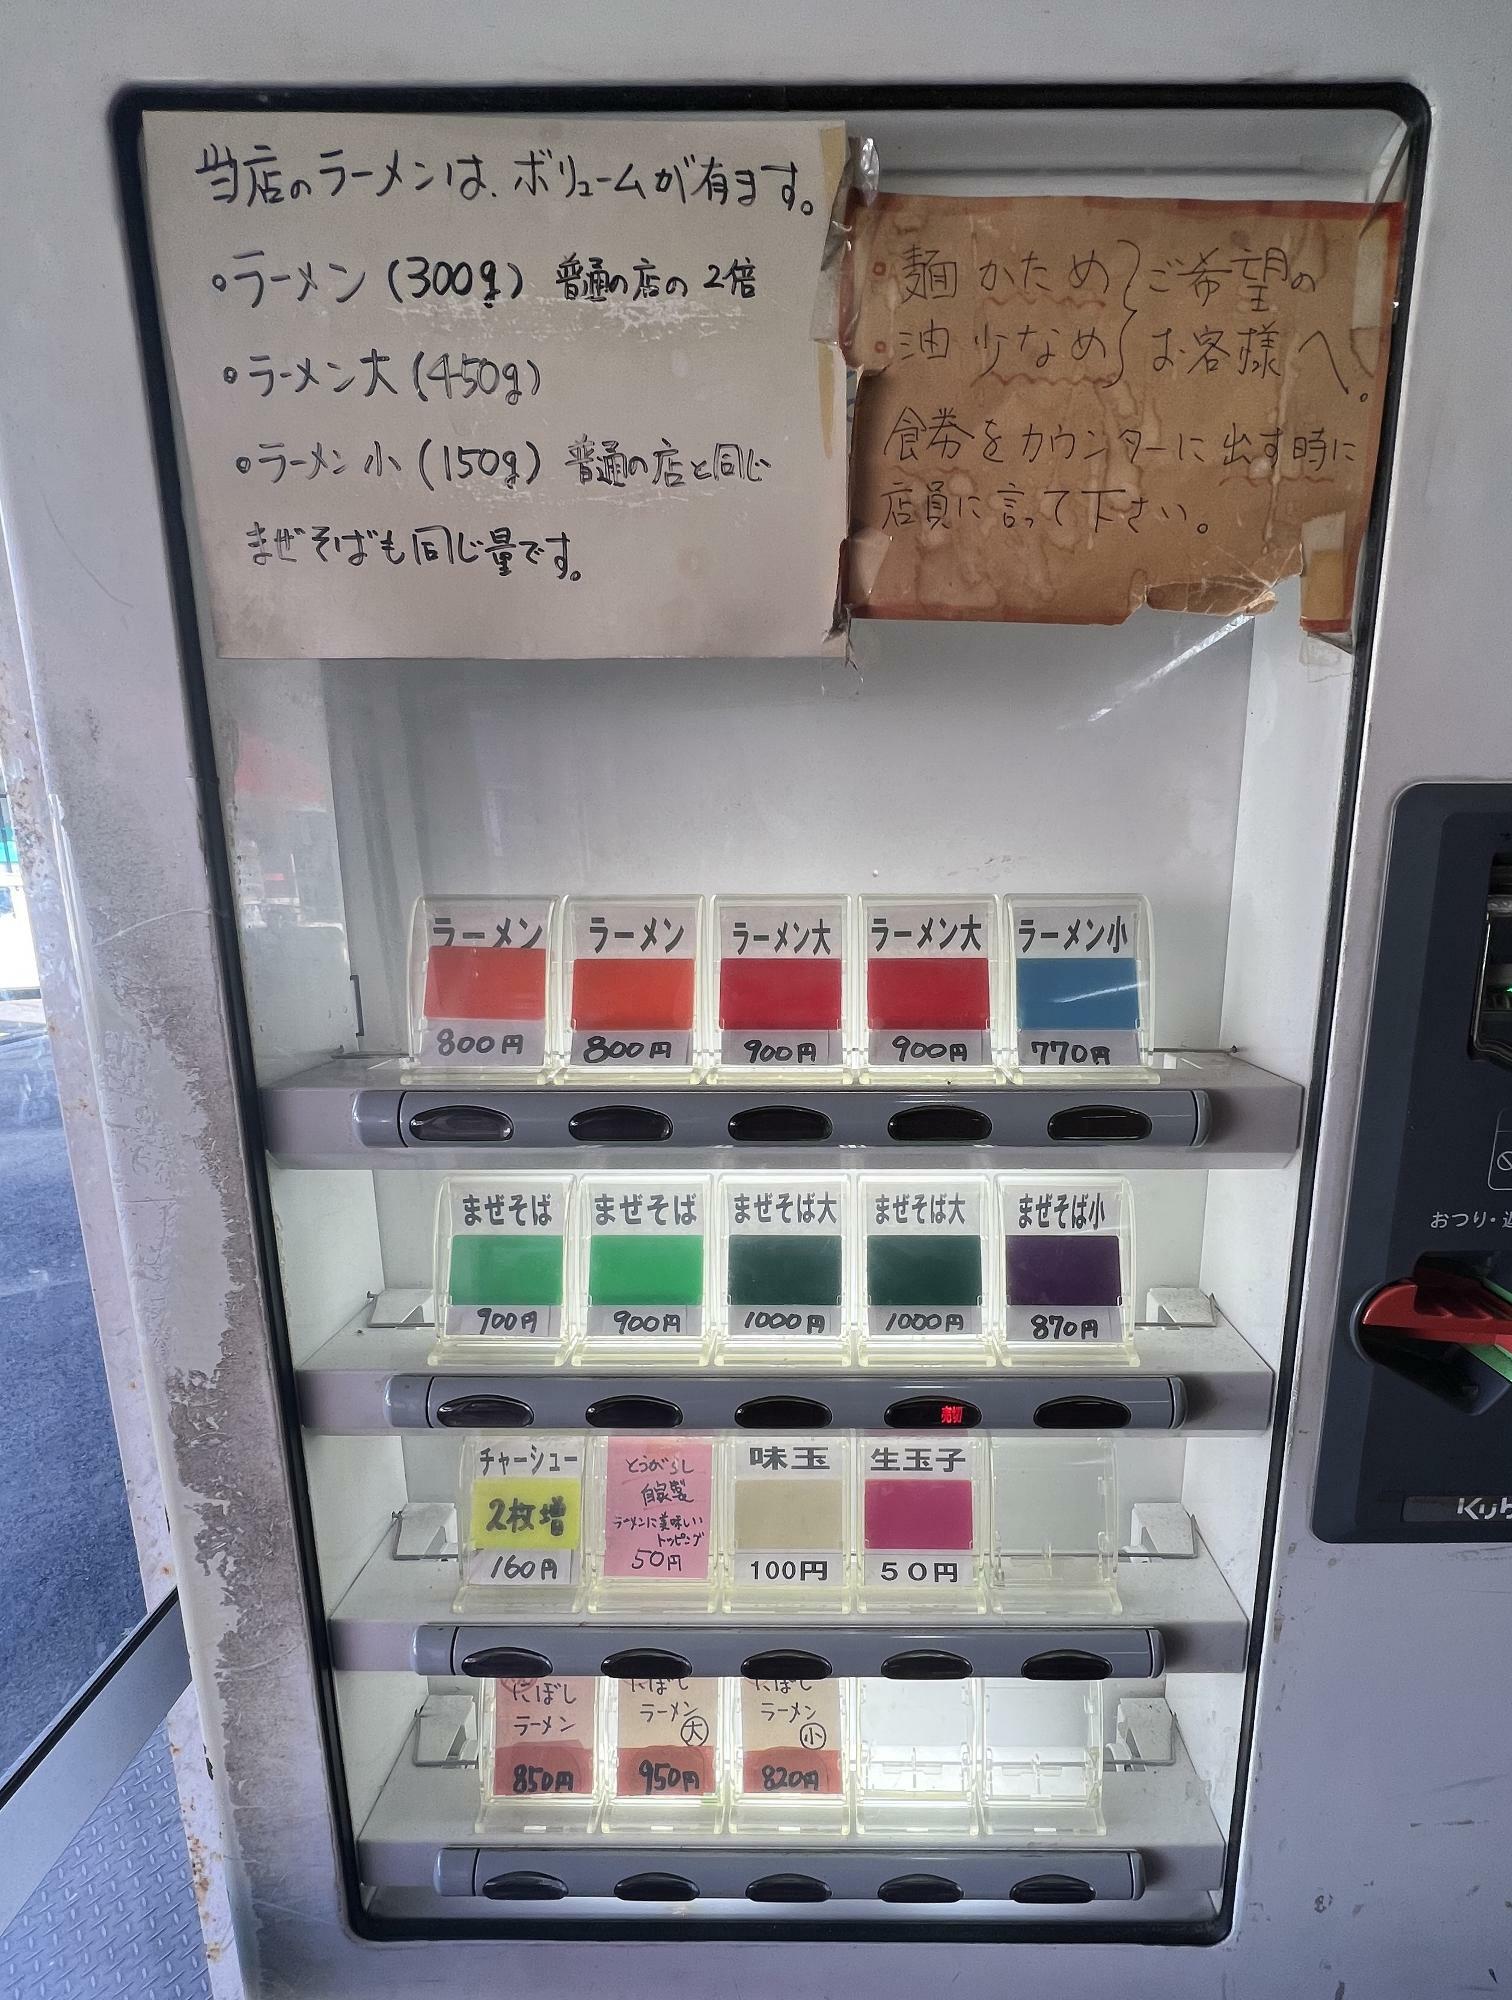 現在は券売機がコンパクトに変わっており、ラーメン、ラーメン大は５０円値上げ、ラーメン小は３０円値上げ